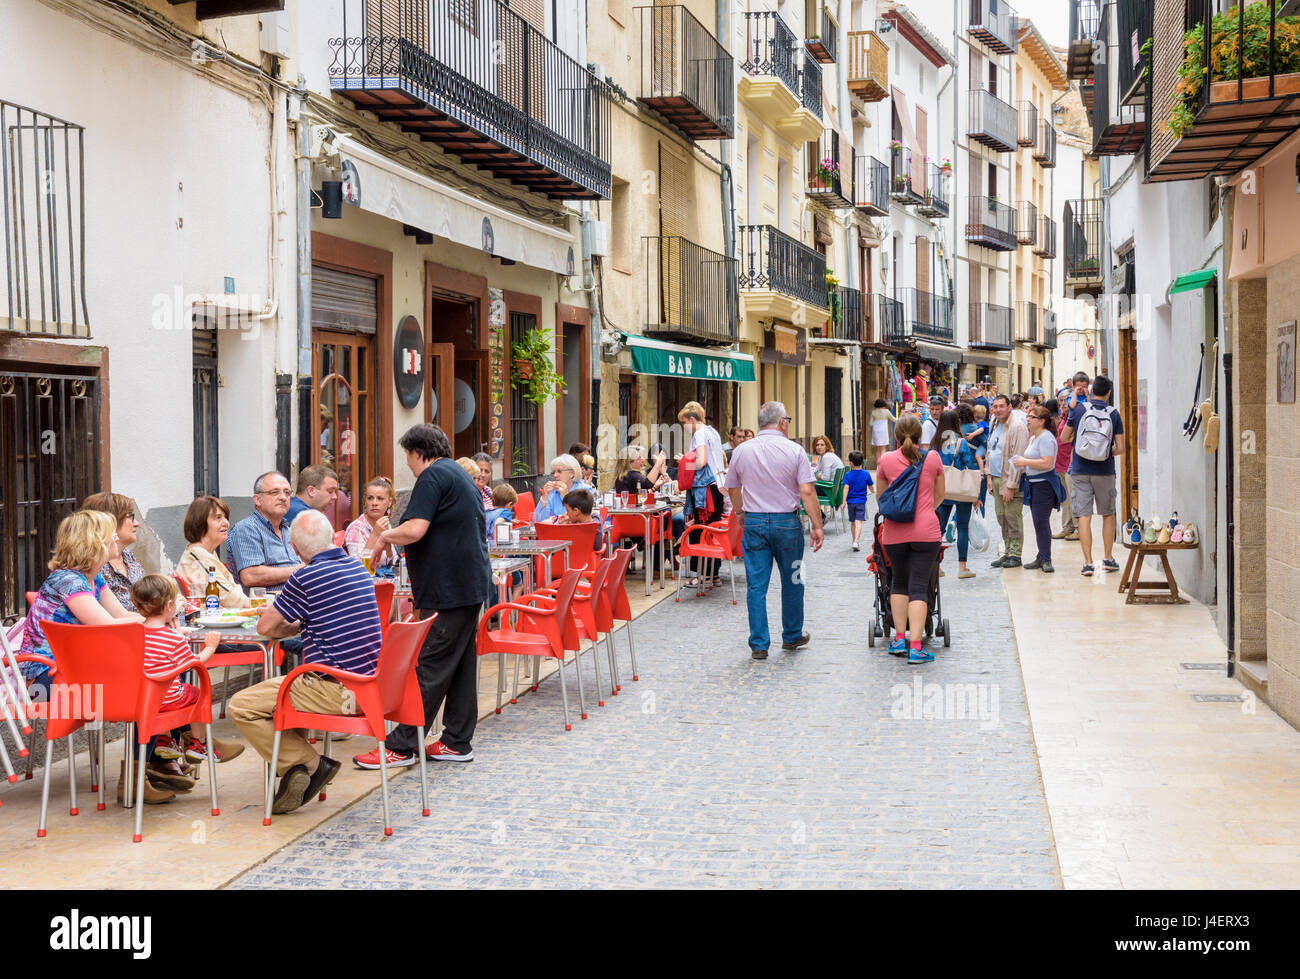 Occupato cafè e negozio rivestita strada pedonale, Carrer de Sant Julia, Morella, Spagna Foto Stock